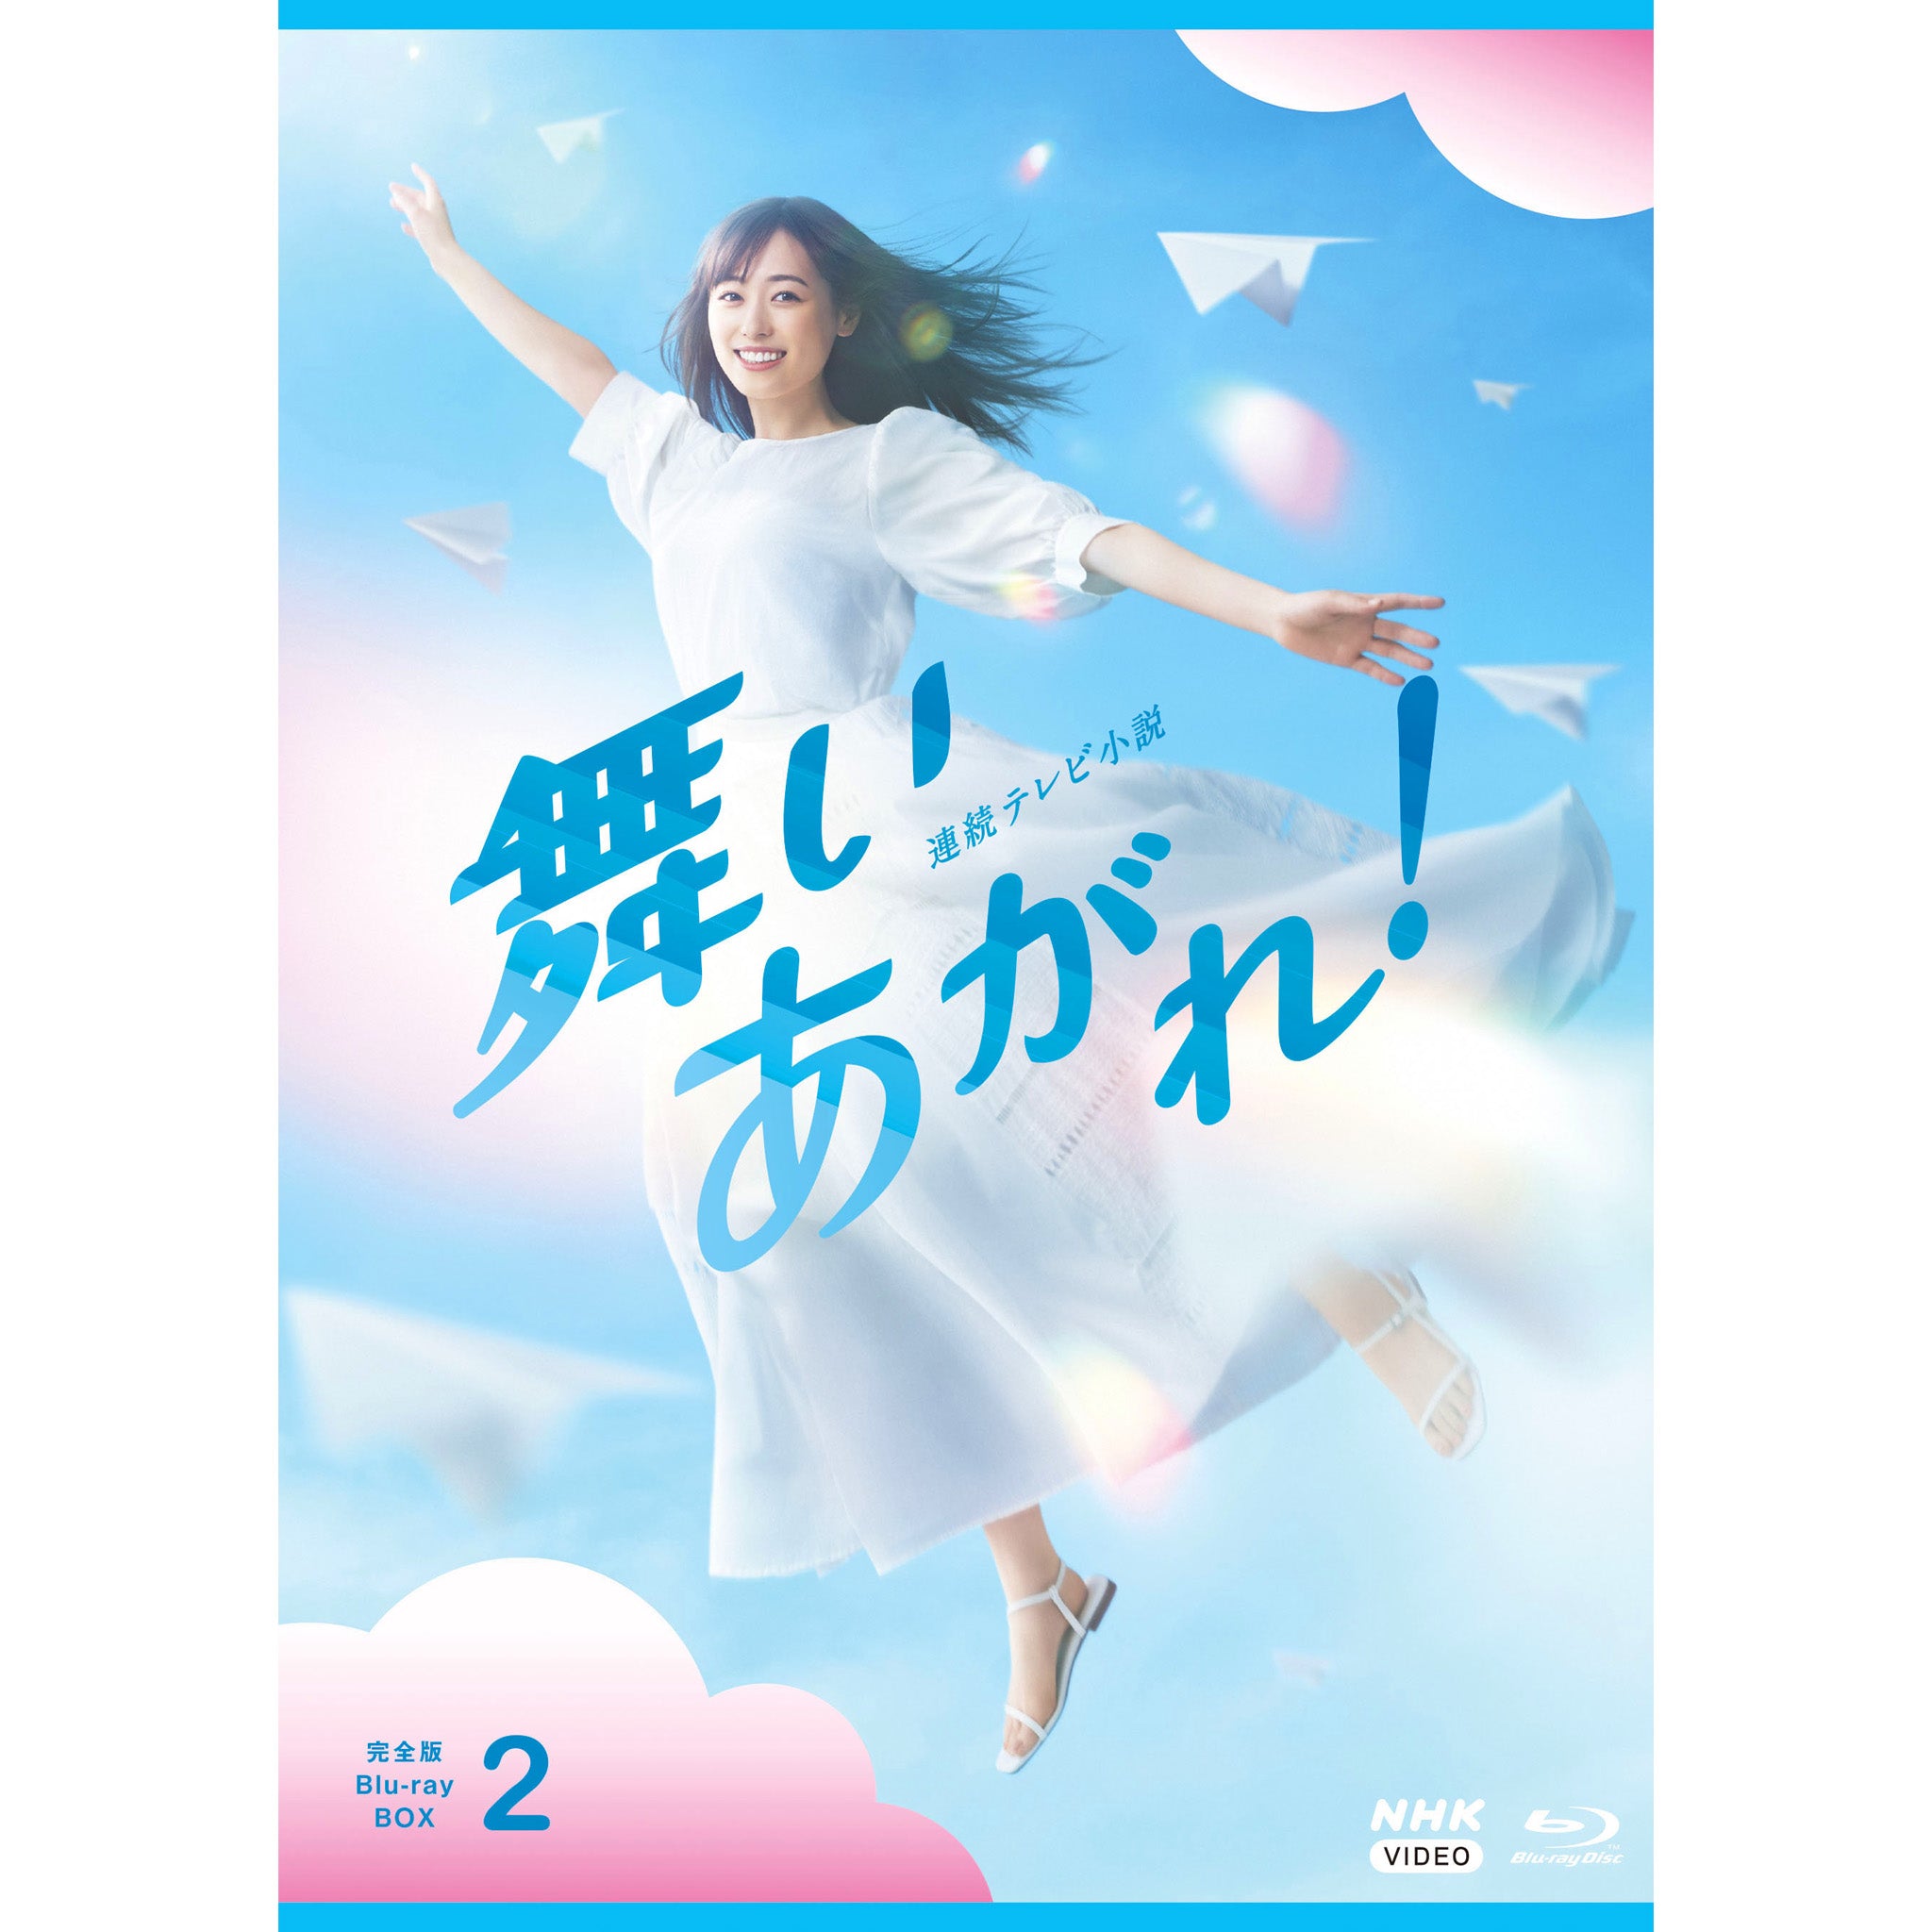 連続テレビ小説 ごちそうさん 完全版 ブルーレイBOX2 [Blu-ray] 9jupf8b